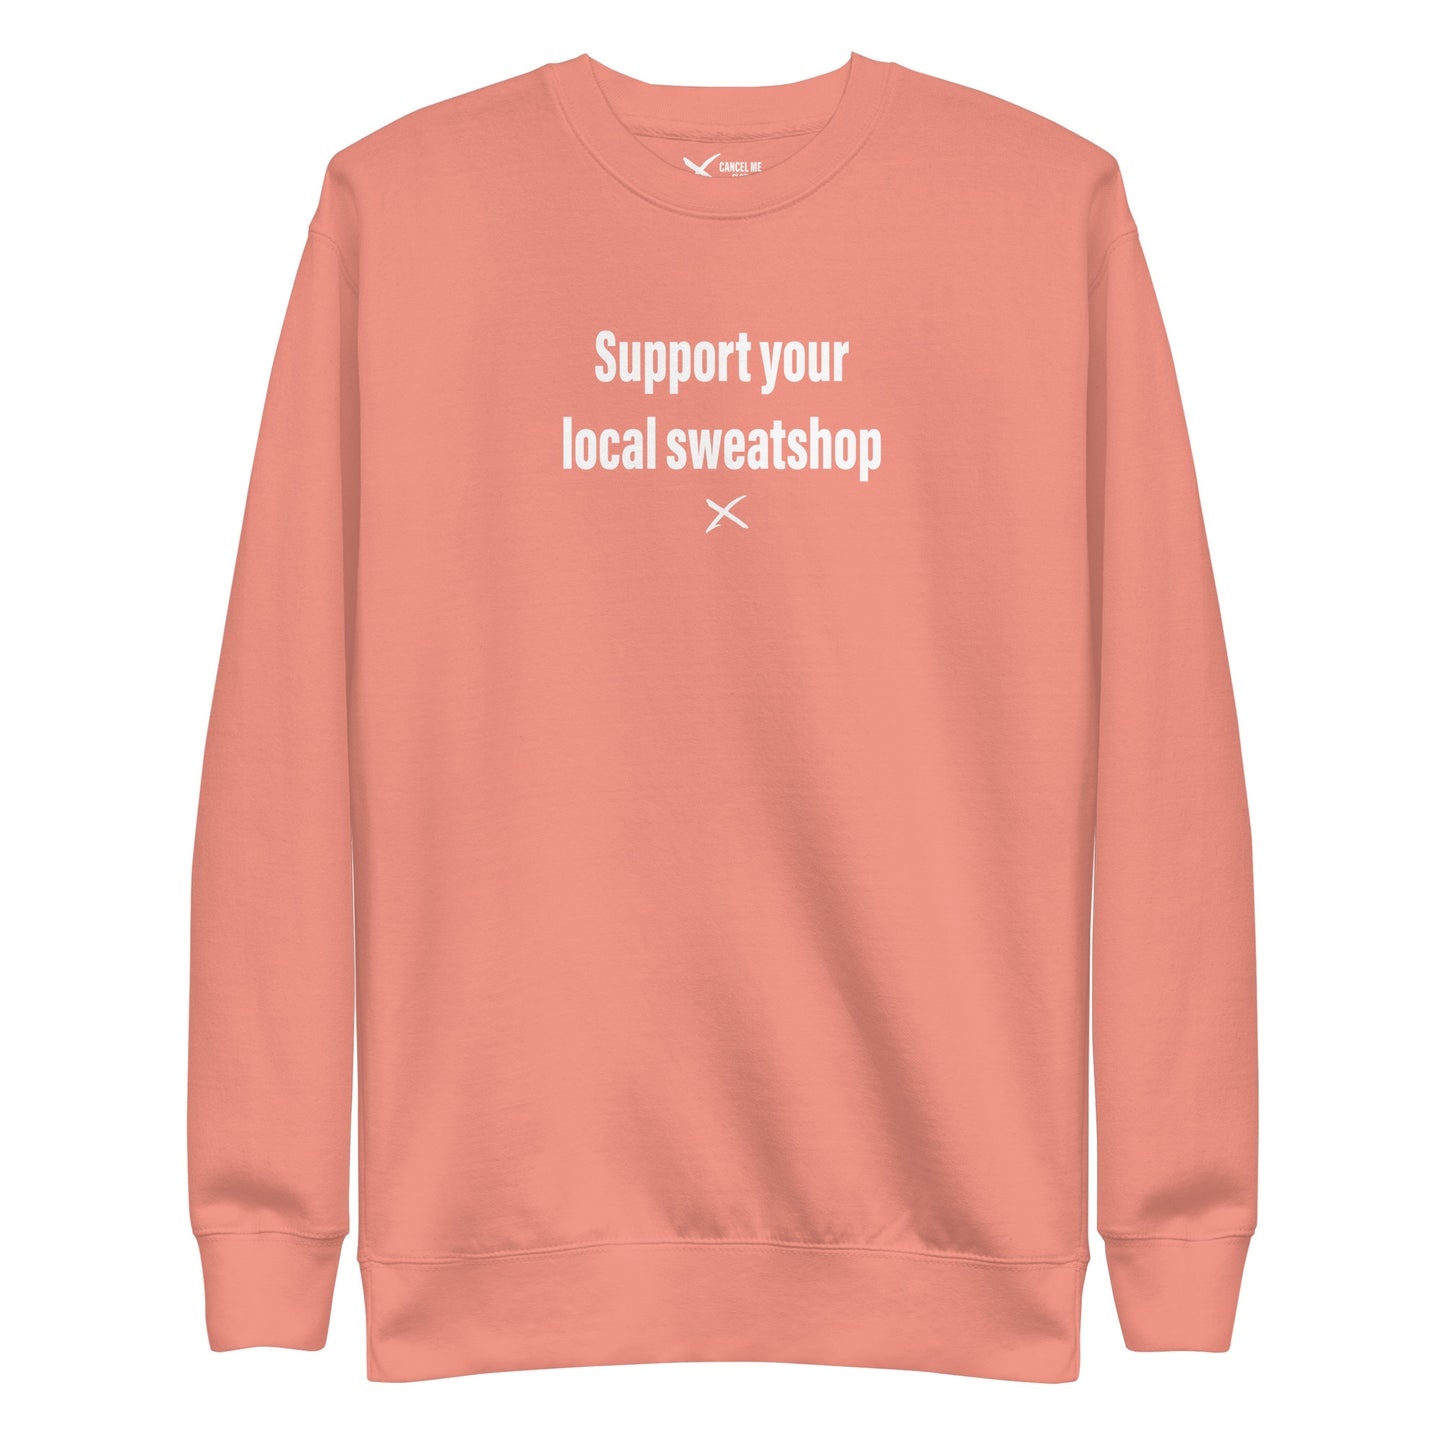 Support your local sweatshop - Sweatshirt